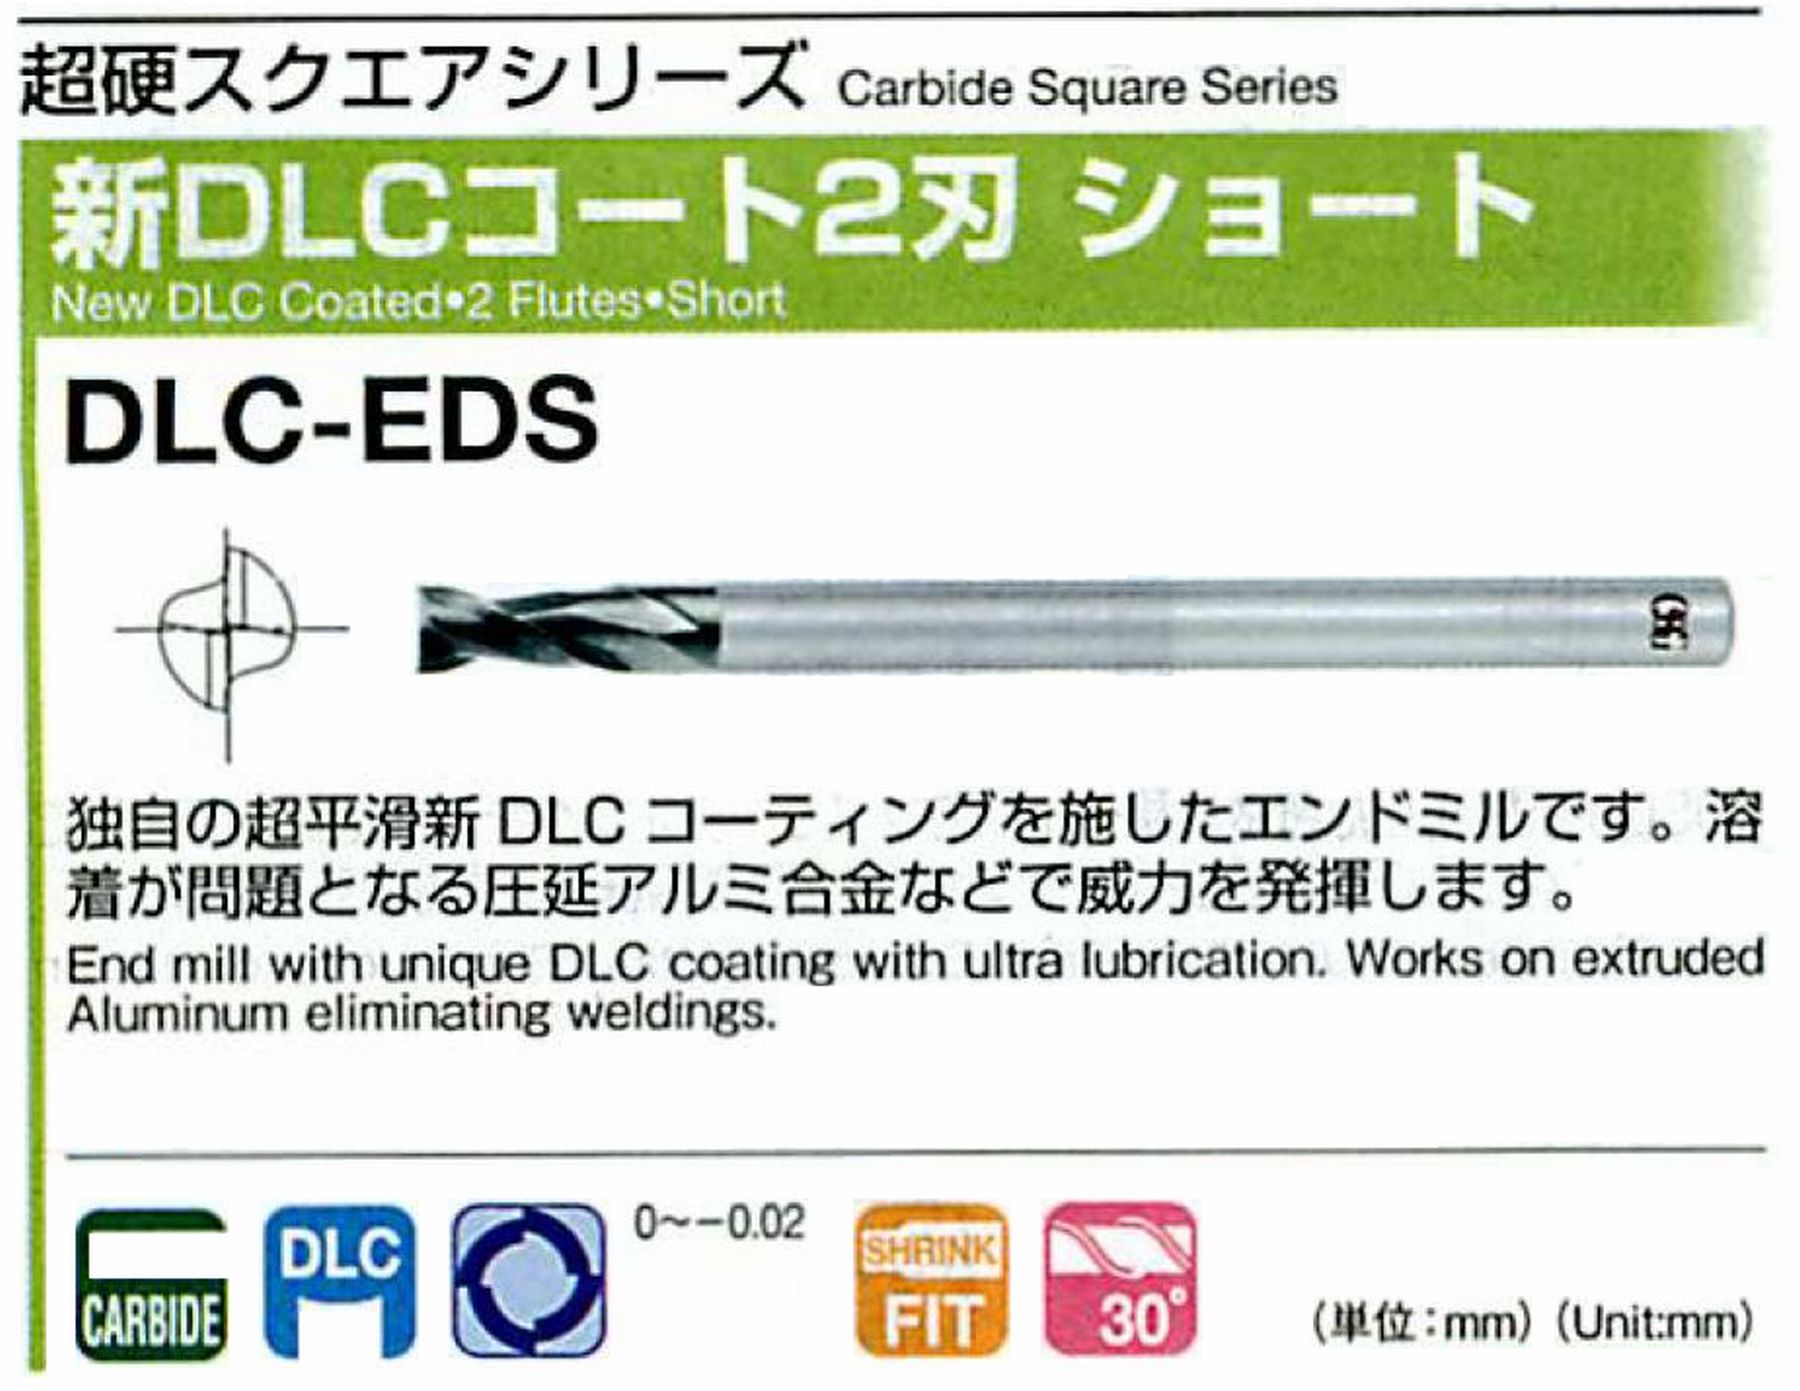 オーエスジー/OSG 新DLCコート 2刃ショート DLC-EDS 外径9 全長70 刃長18 シャンク径10mm